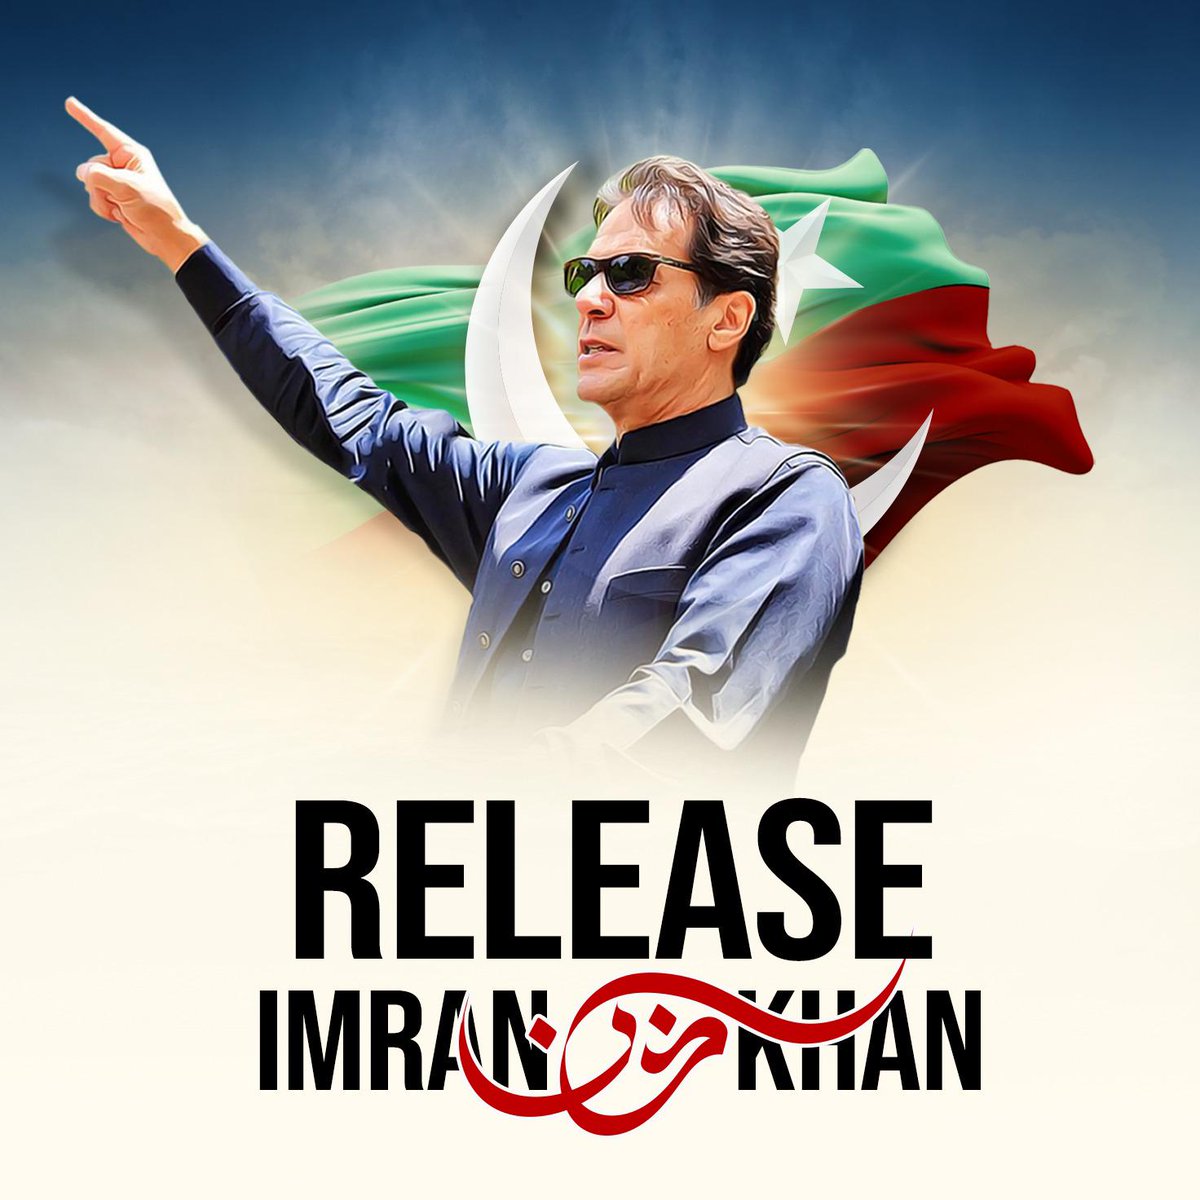 عمران خان کو رہا کرو۔ 📌
📌 Release Imran Khan!. 

#ReleaseImrankhanPTI #ReleaseImranKhanNow #ImranKhanForPakistan #ImranKhan804 #ReleasePoliticalPrisoners #ImranKhanIsOurLeader #ImranKhan 
#عمران_کو_رہا_کرو #عمران_خان_ایک_نظریہ_ہے #عمران_خان_کی_رہائی_اولین_ترجیح #عمران_خان